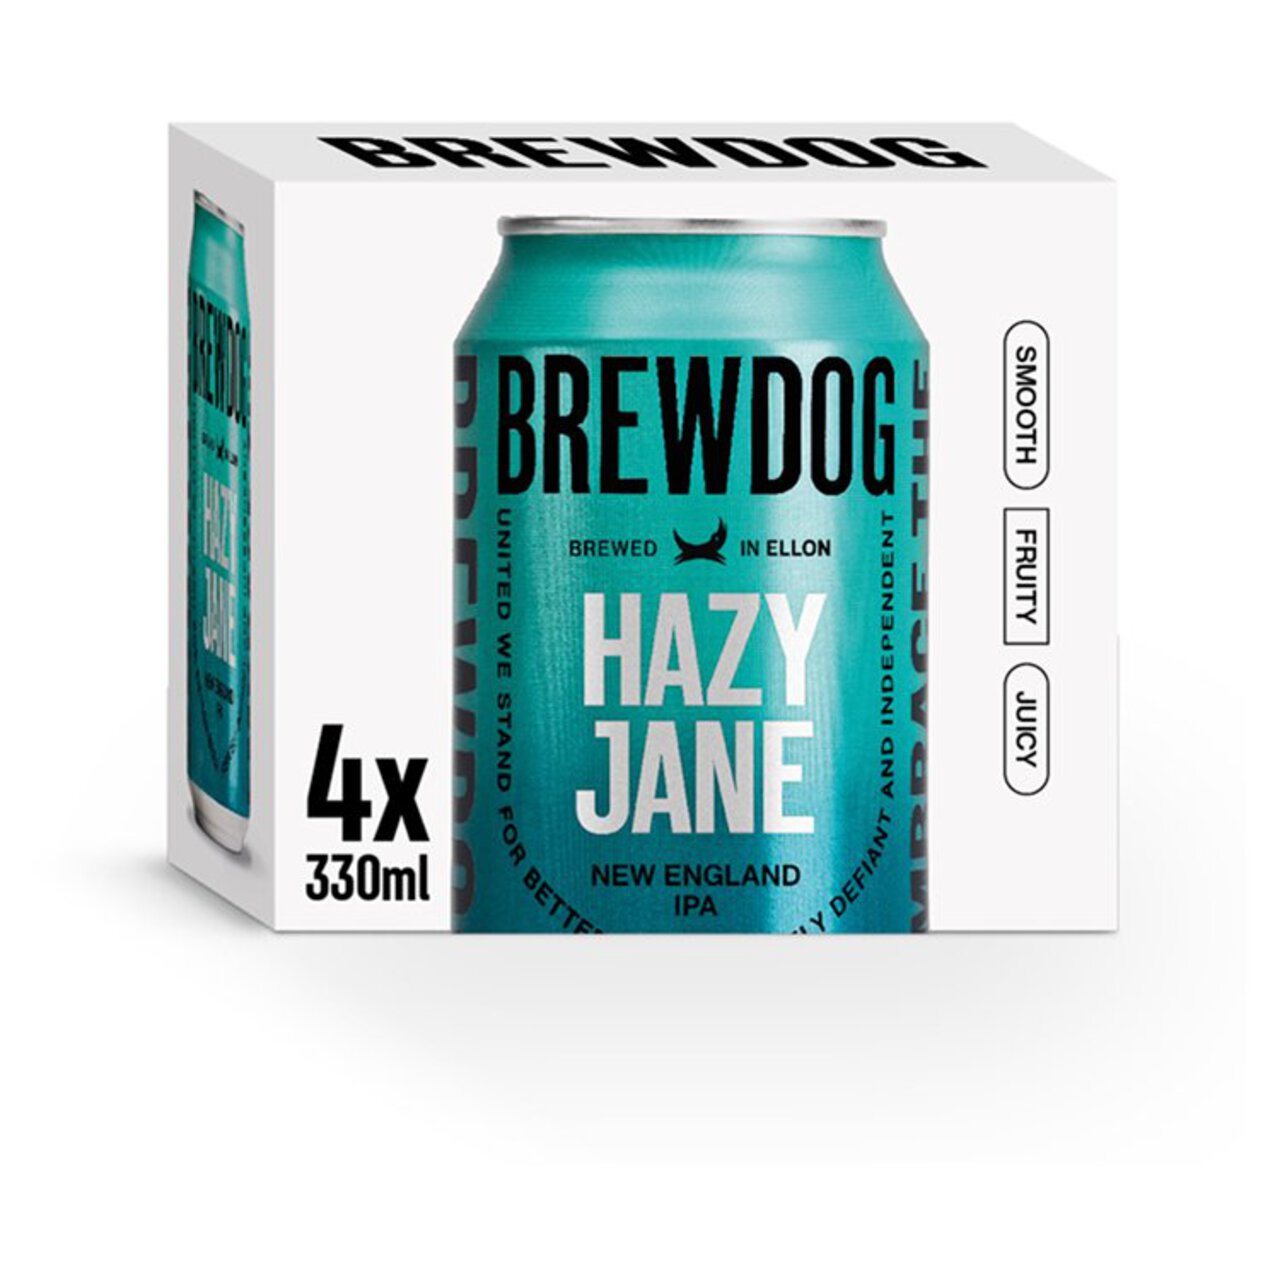 BrewDog Hazy Jane 4 x 330ml